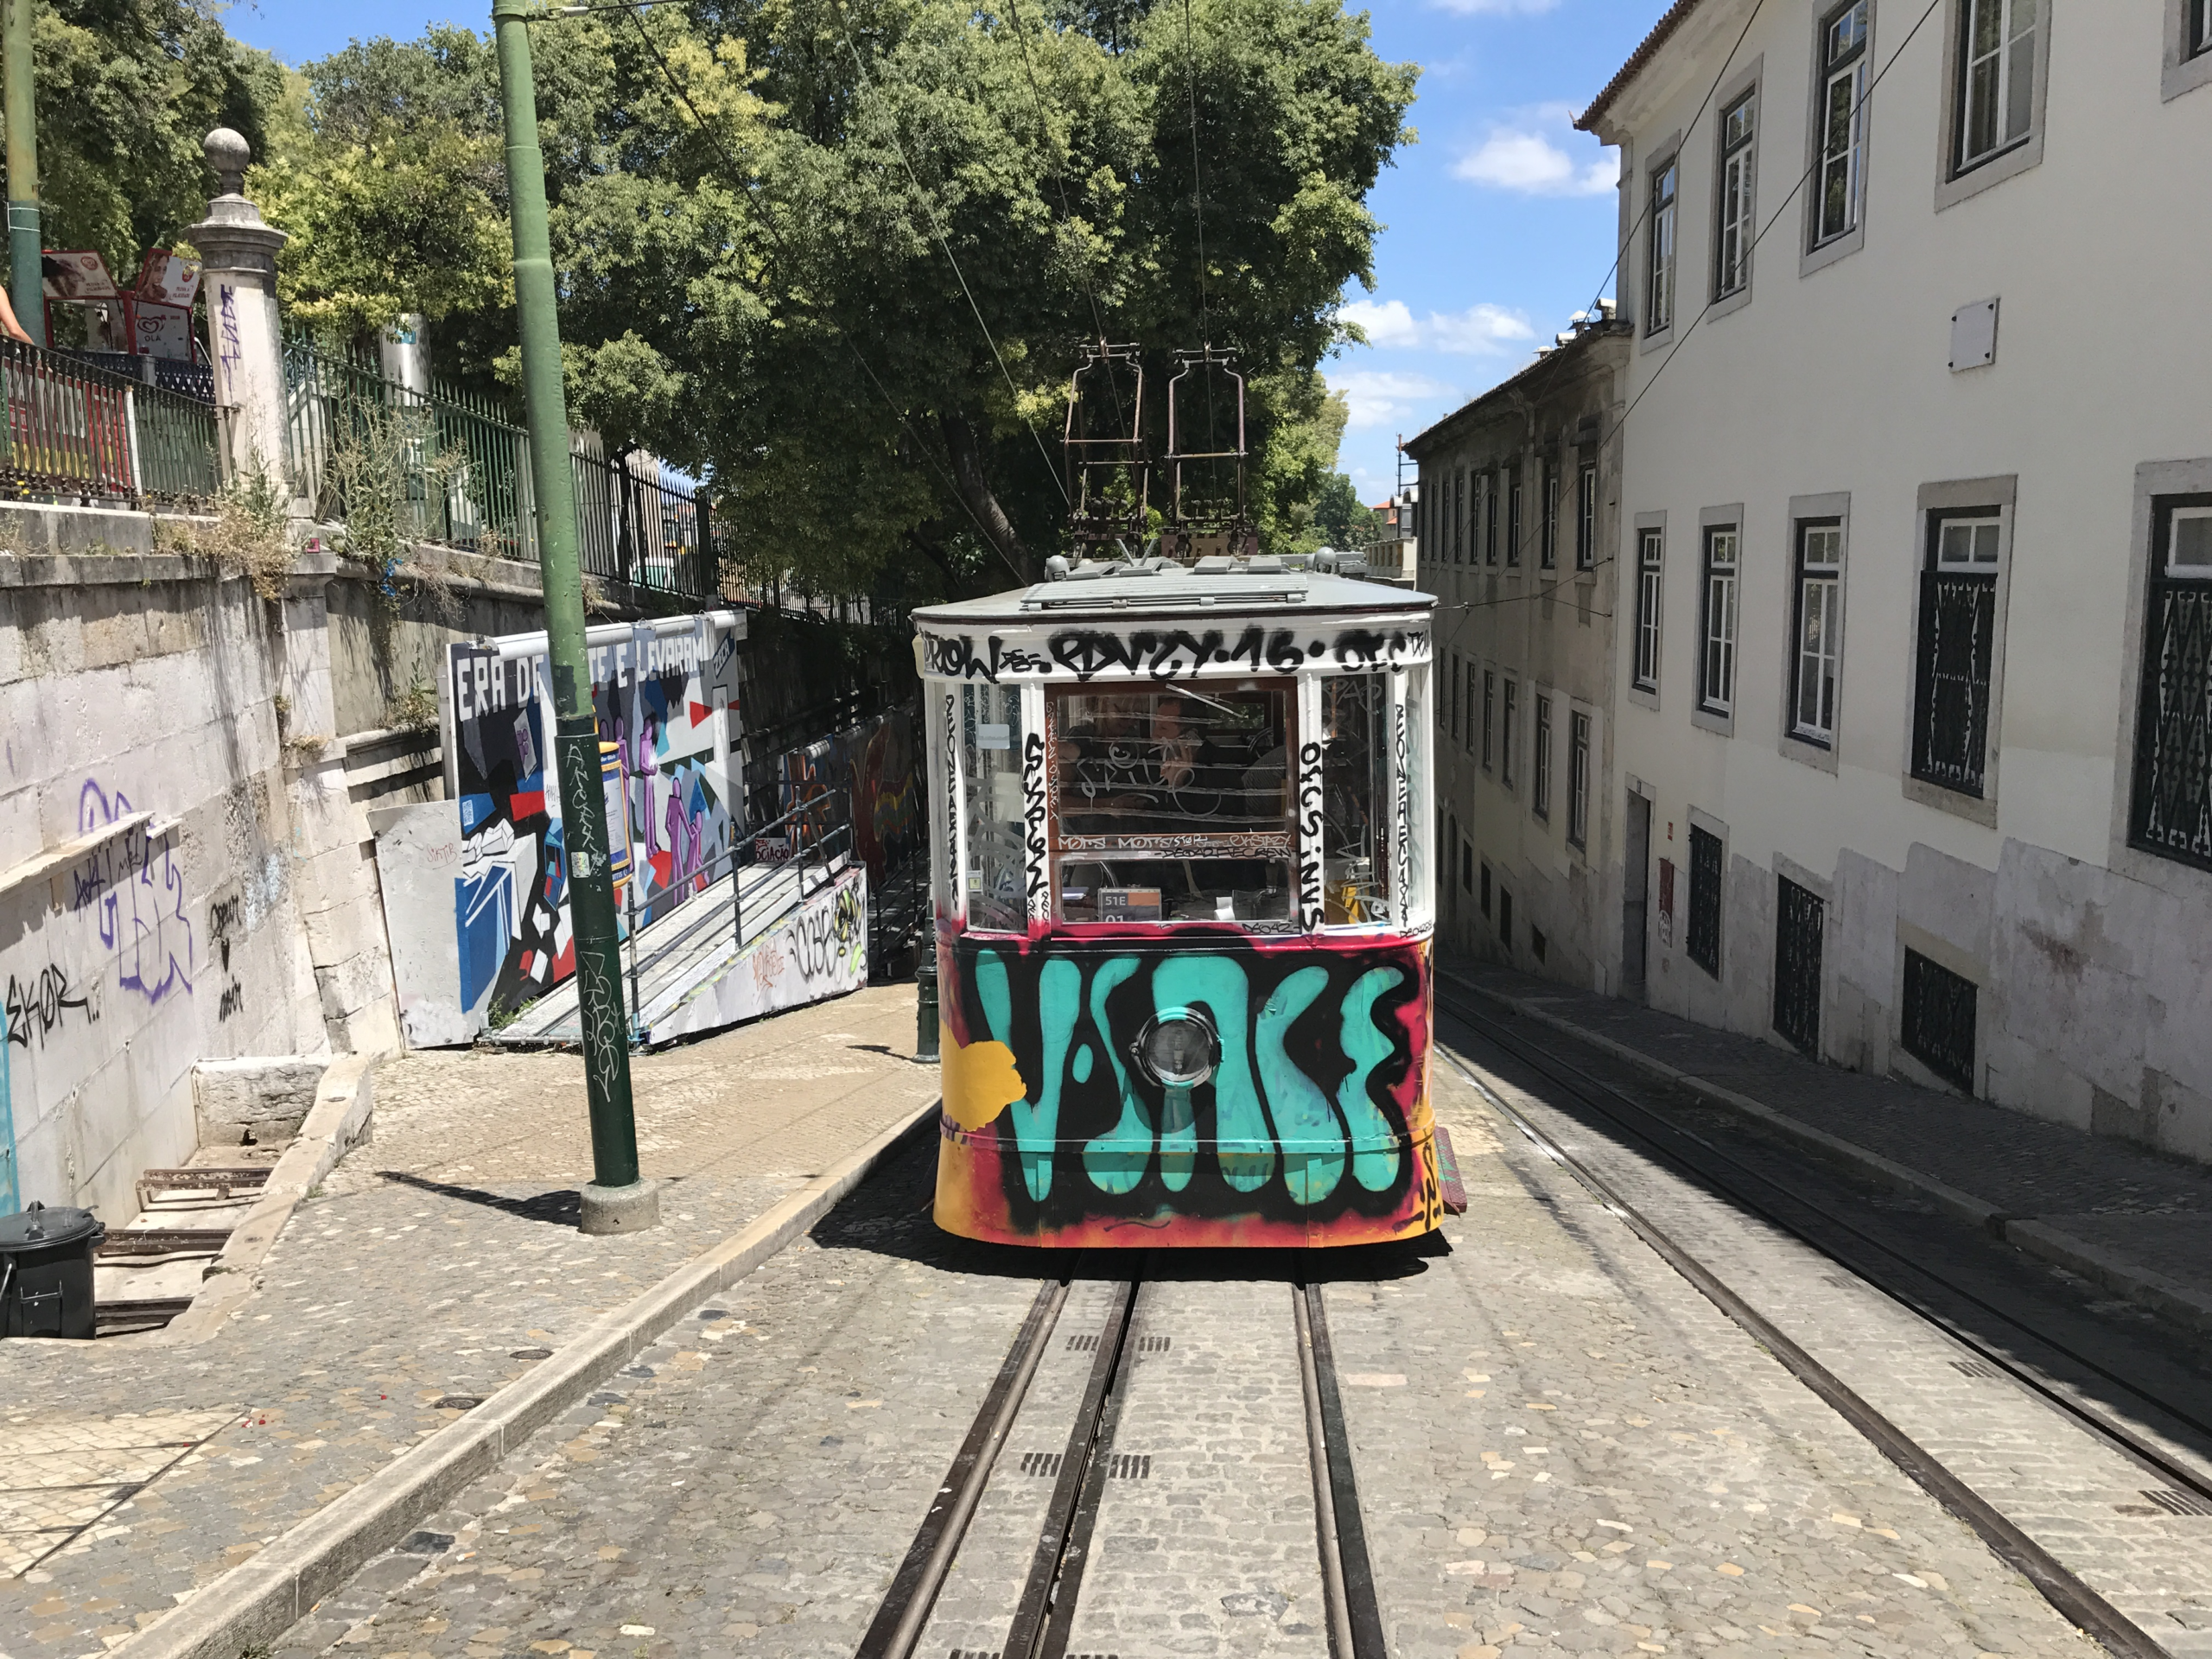 Die bunte Tram, die sich die Gässchen in Lissabon hoch quält, fasziniert nicht nur die Kids (Bild: Sonja Alefi)